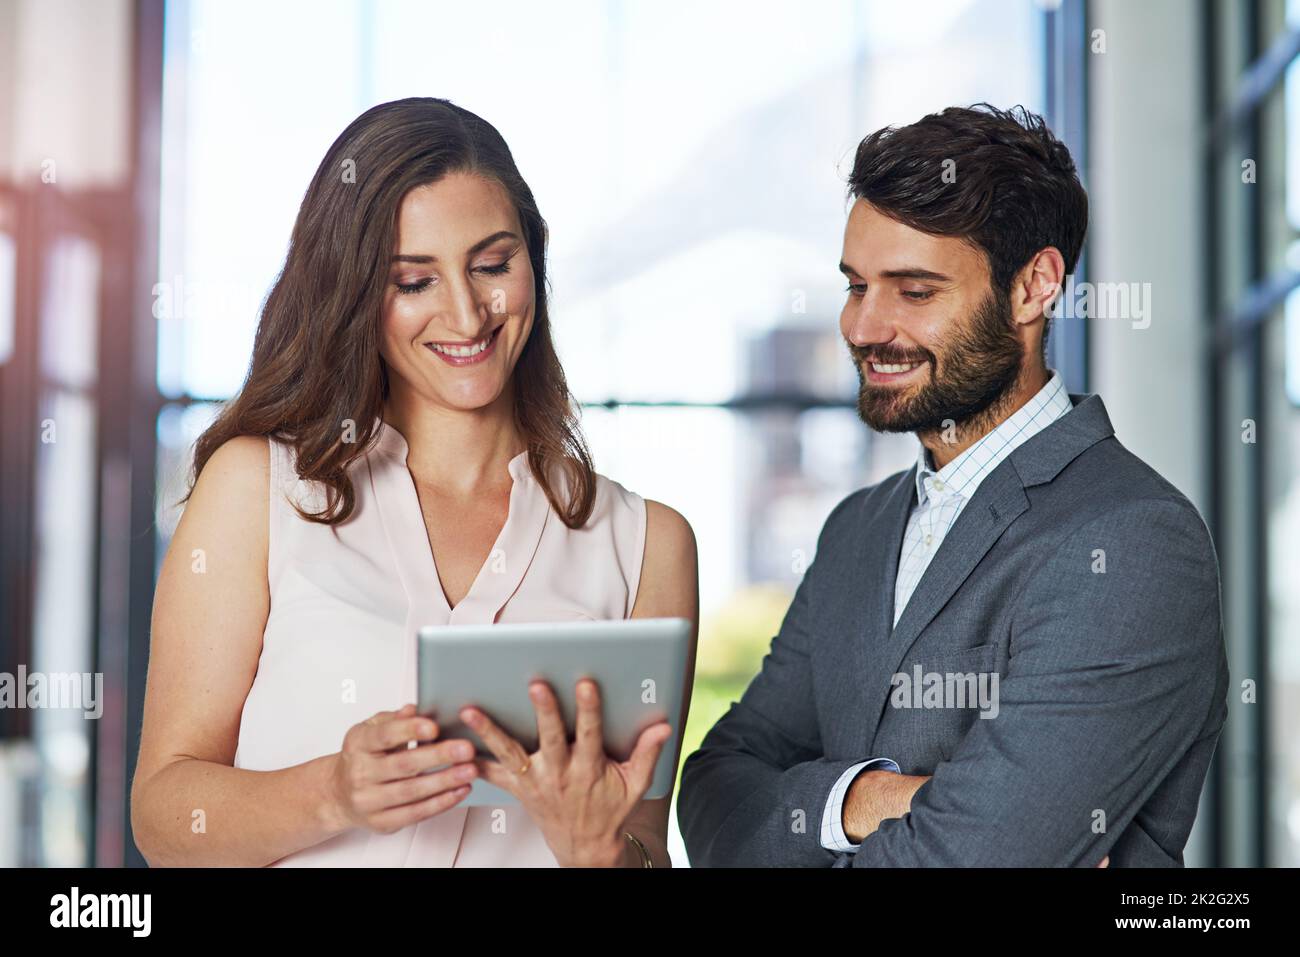 Les cadres intelligents utilisent une technologie intelligente. Photo d'un jeune homme d'affaires et d'une femme d'affaires utilisant une tablette numérique ensemble dans un bureau. Banque D'Images